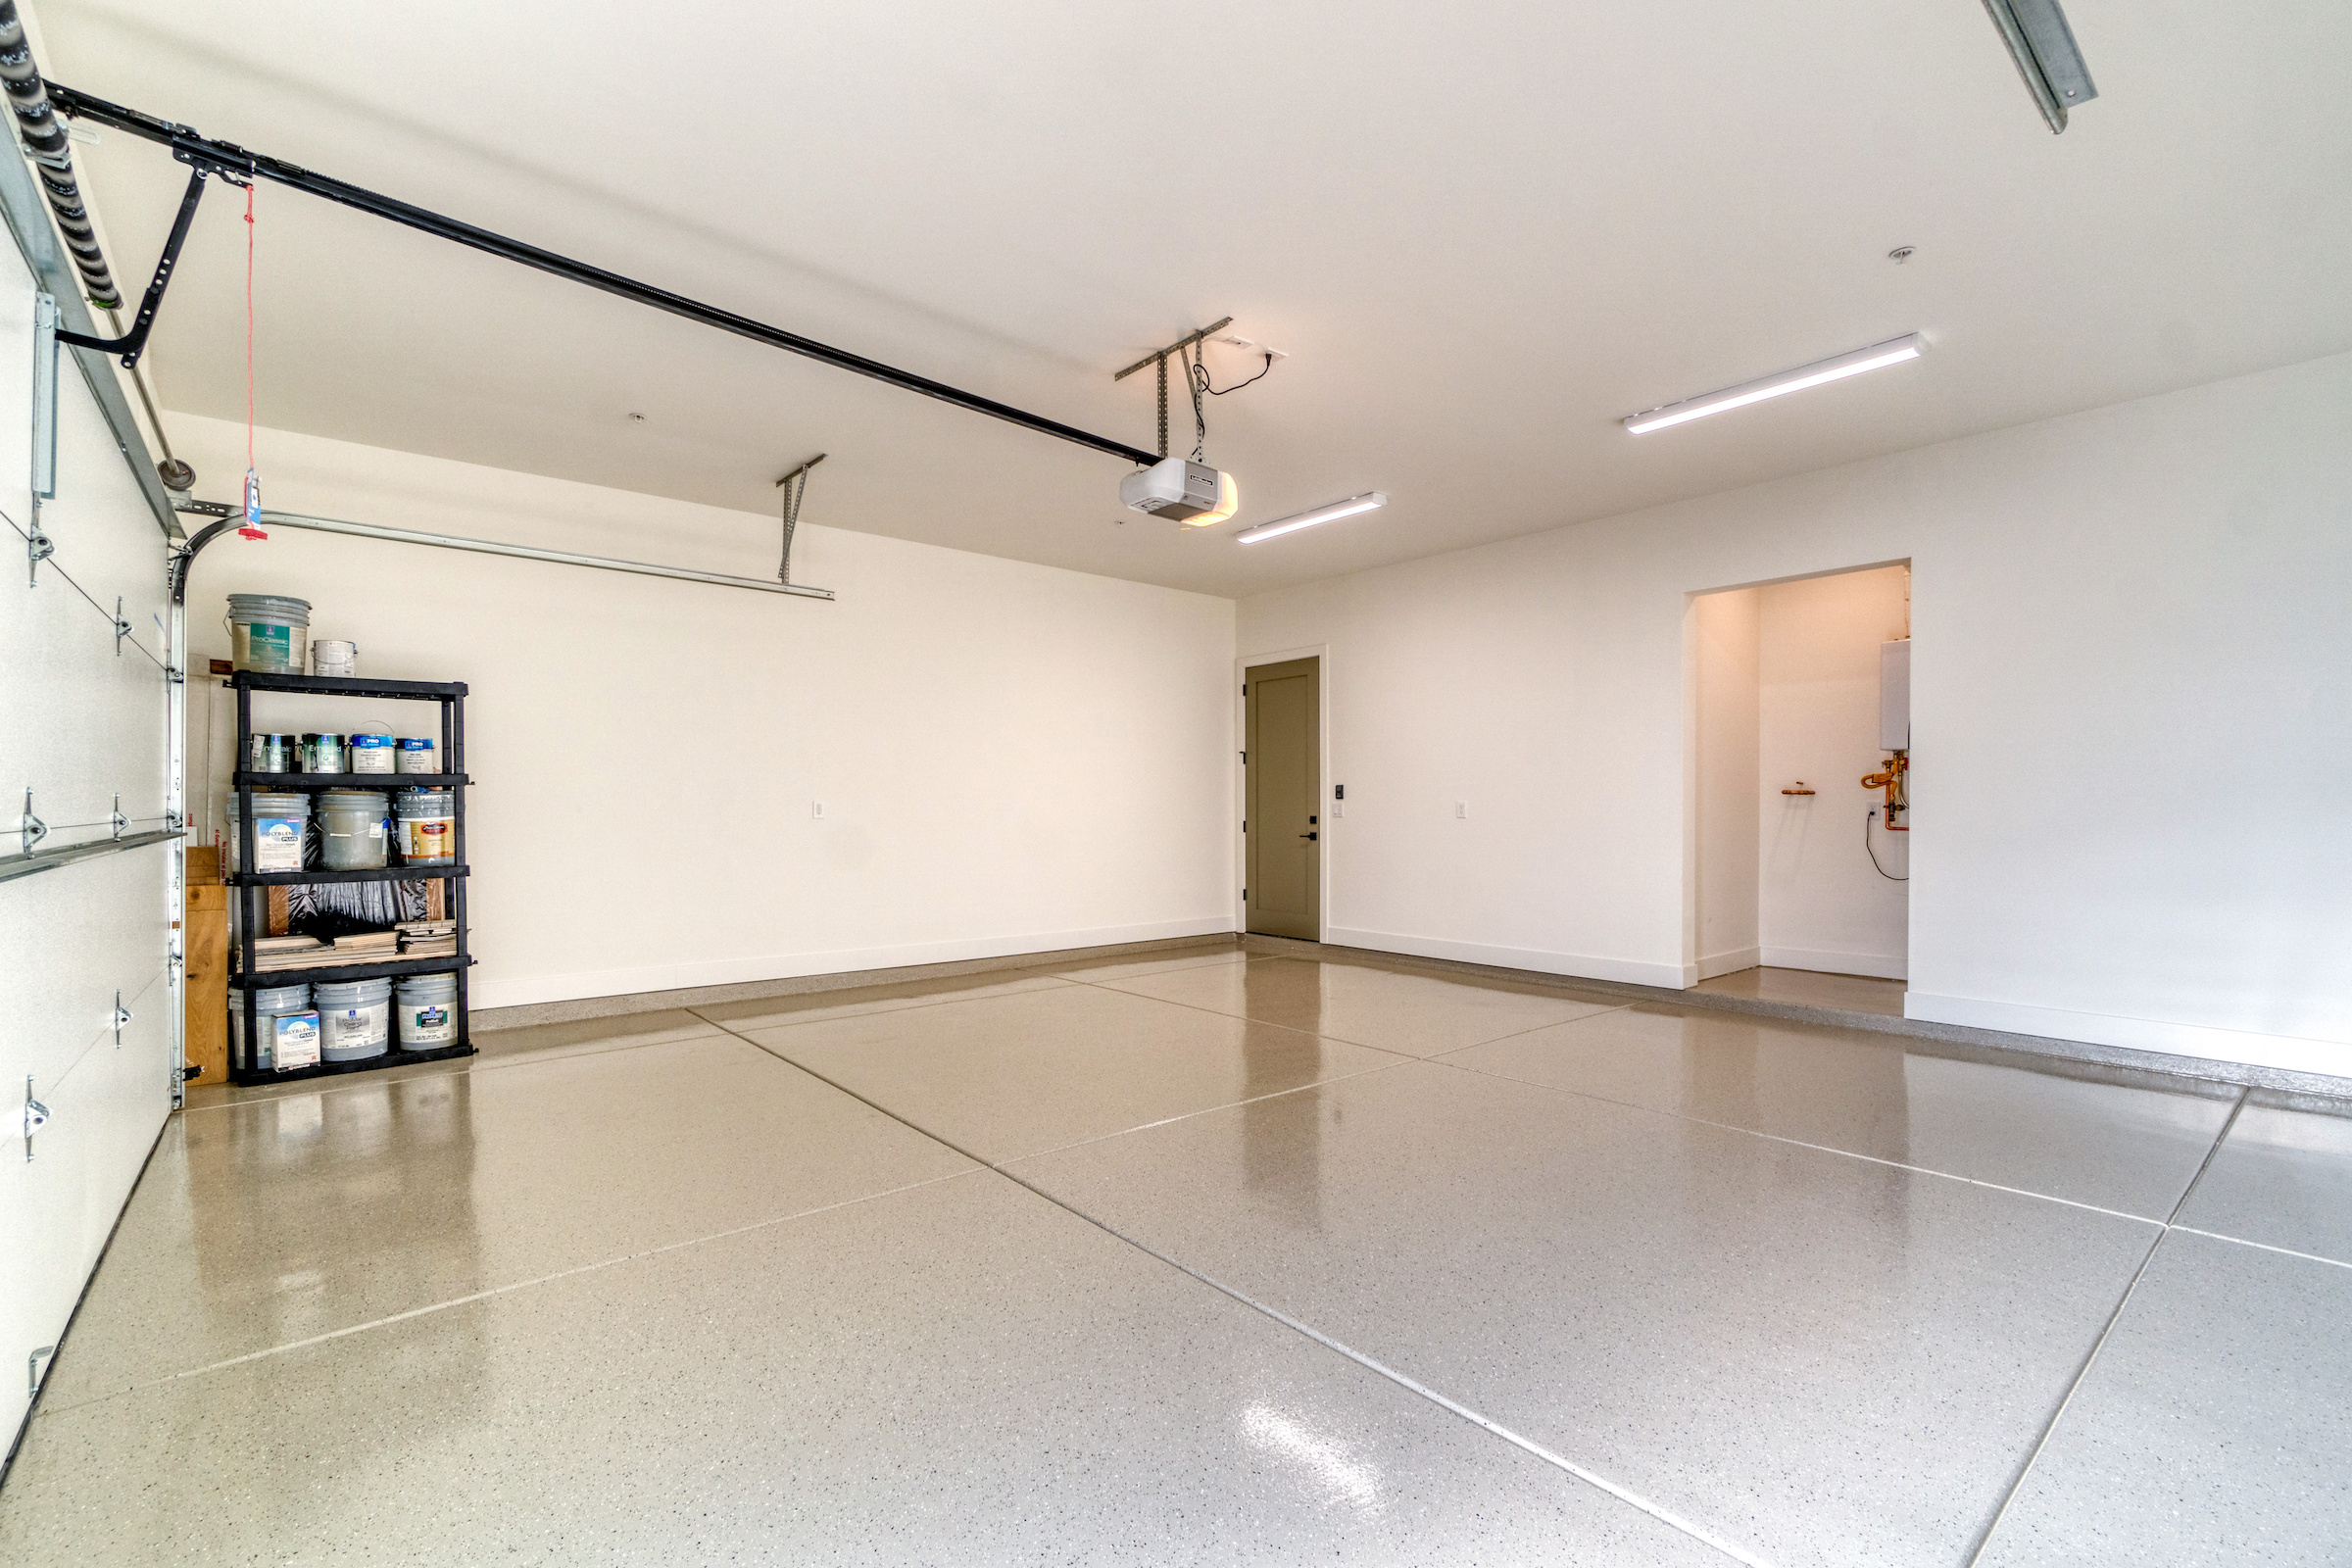 Interior garage with epoxy flooring